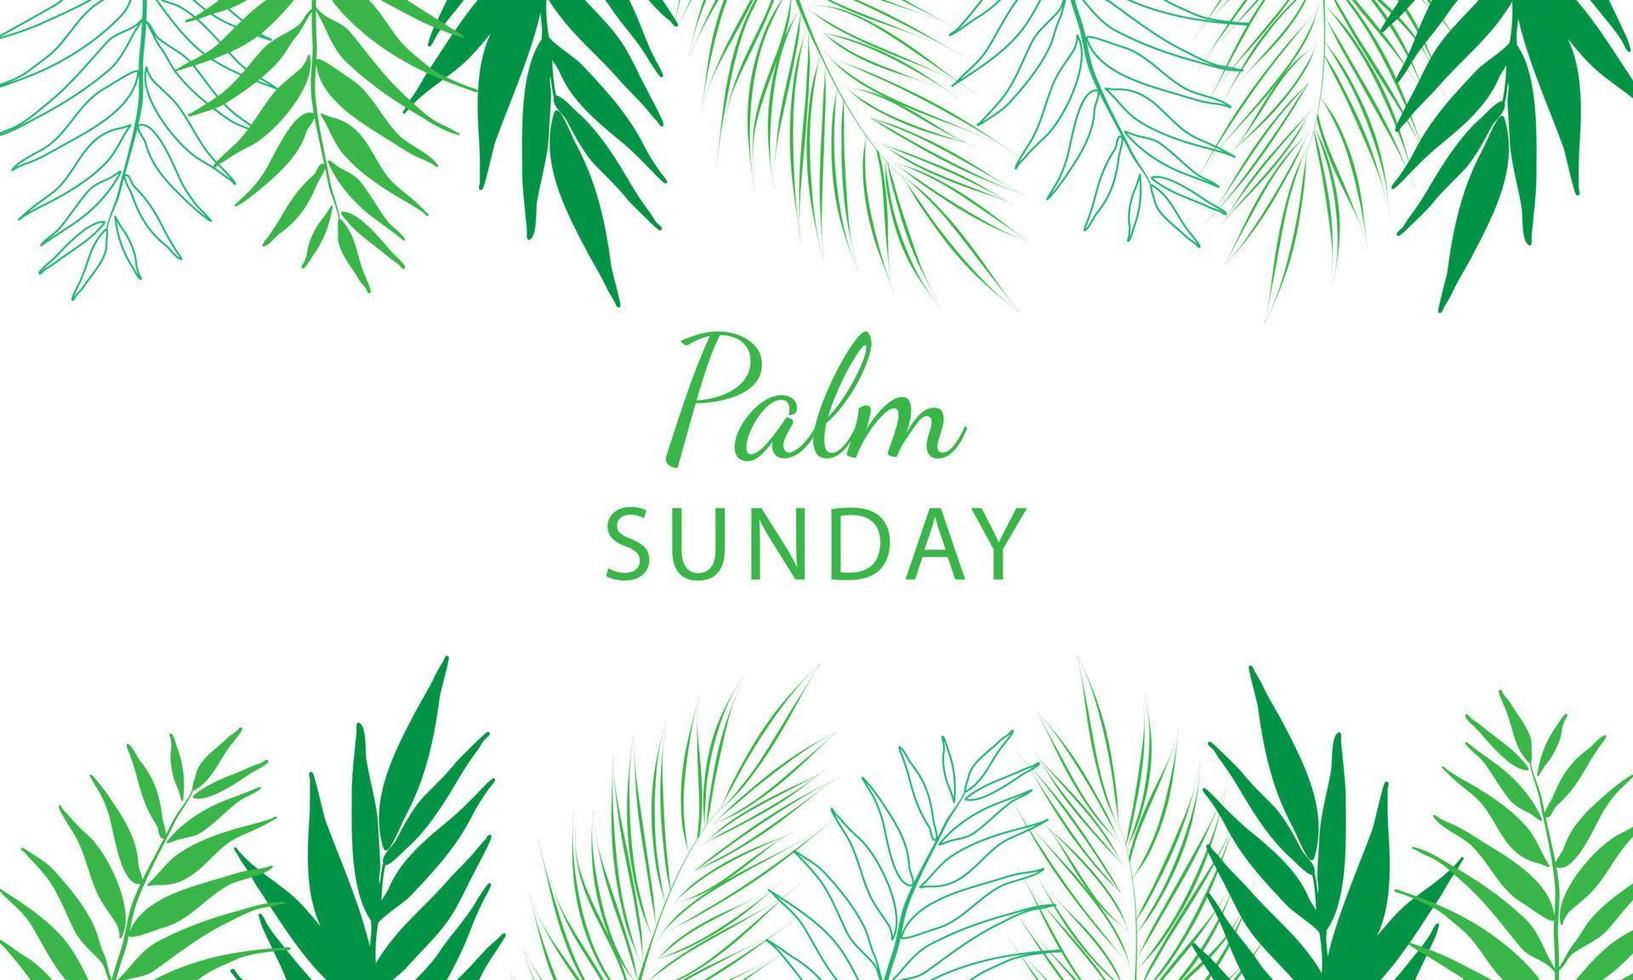 domingo de palma - plantilla de banner de saludo para festividad cristiana, con fondo de hojas de palmera. vector